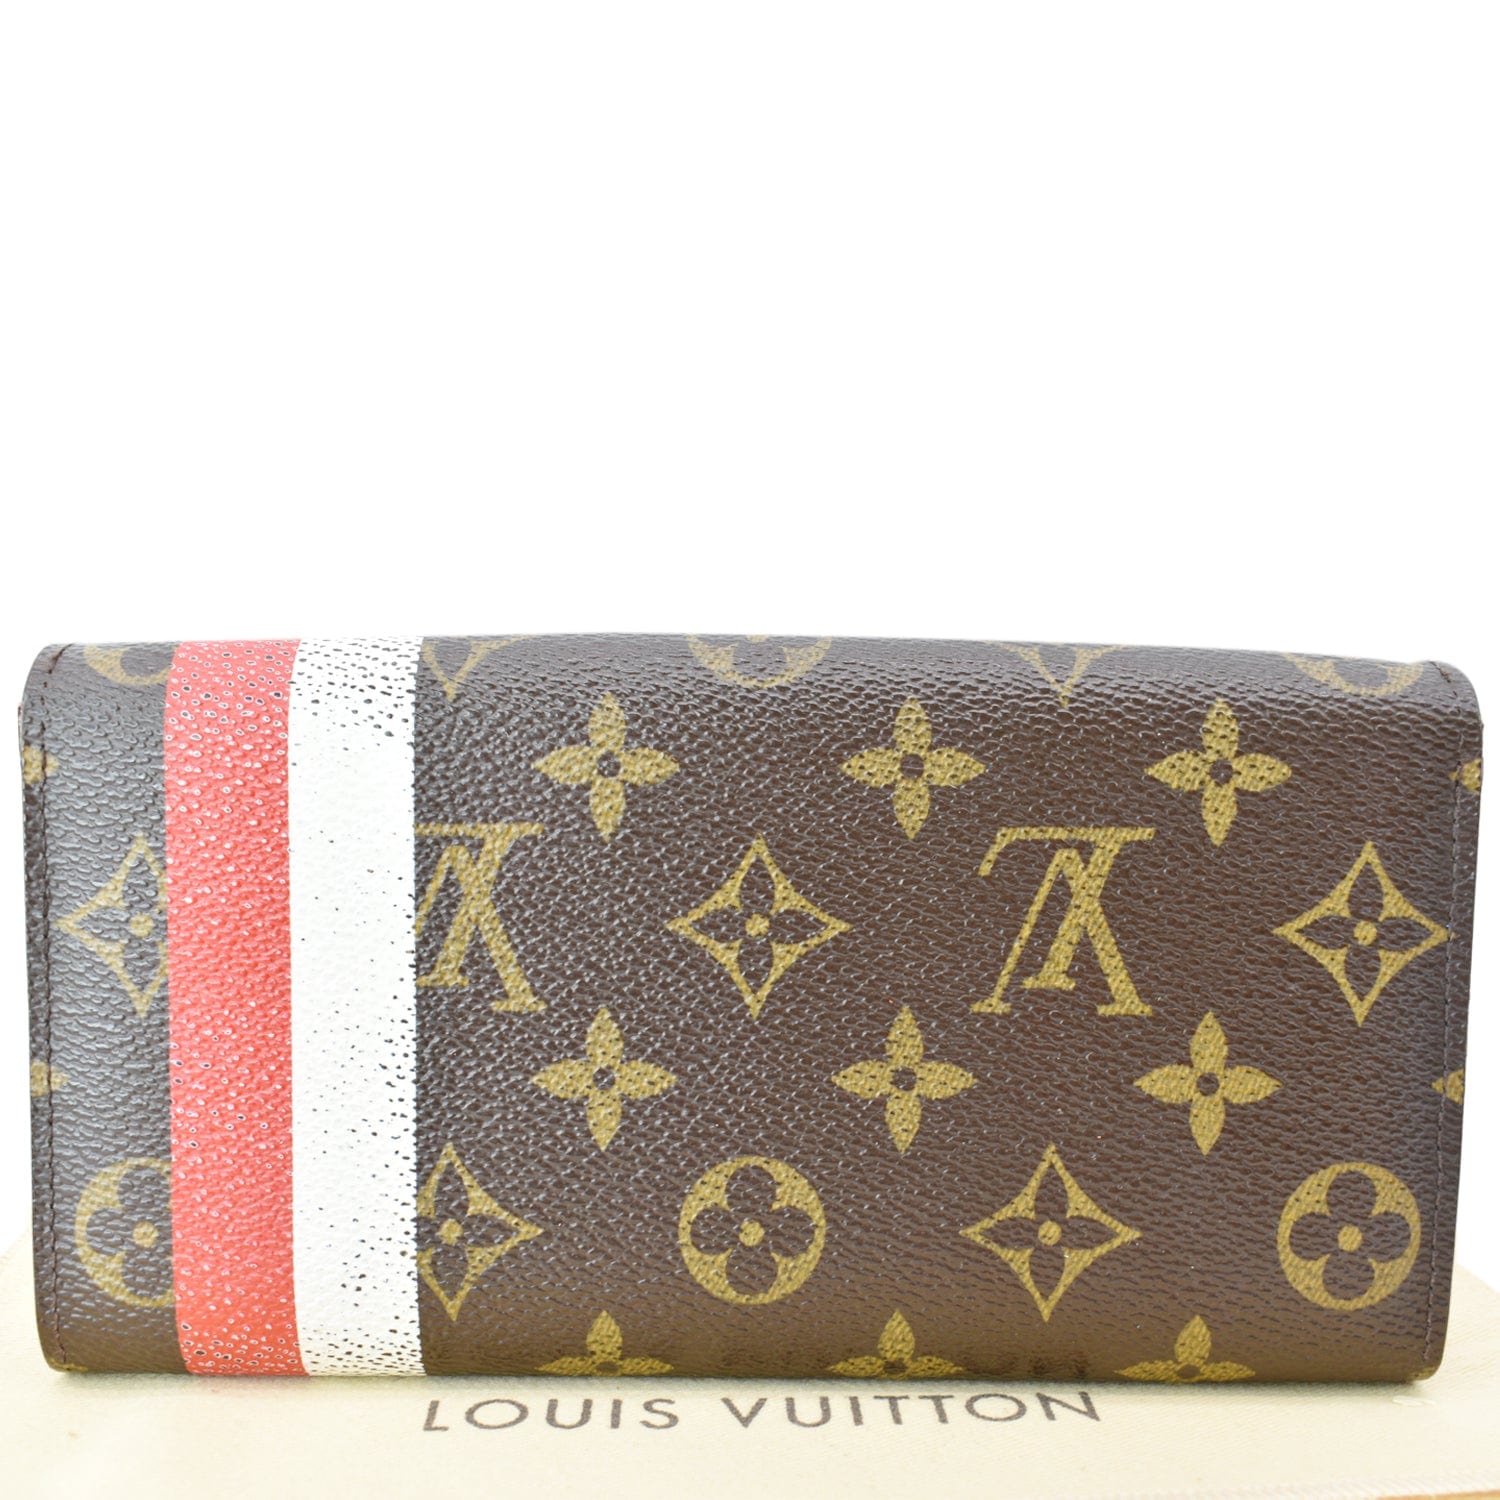 Authentic Louis Vuitton Monogram Portefeuille Sarah Wallet